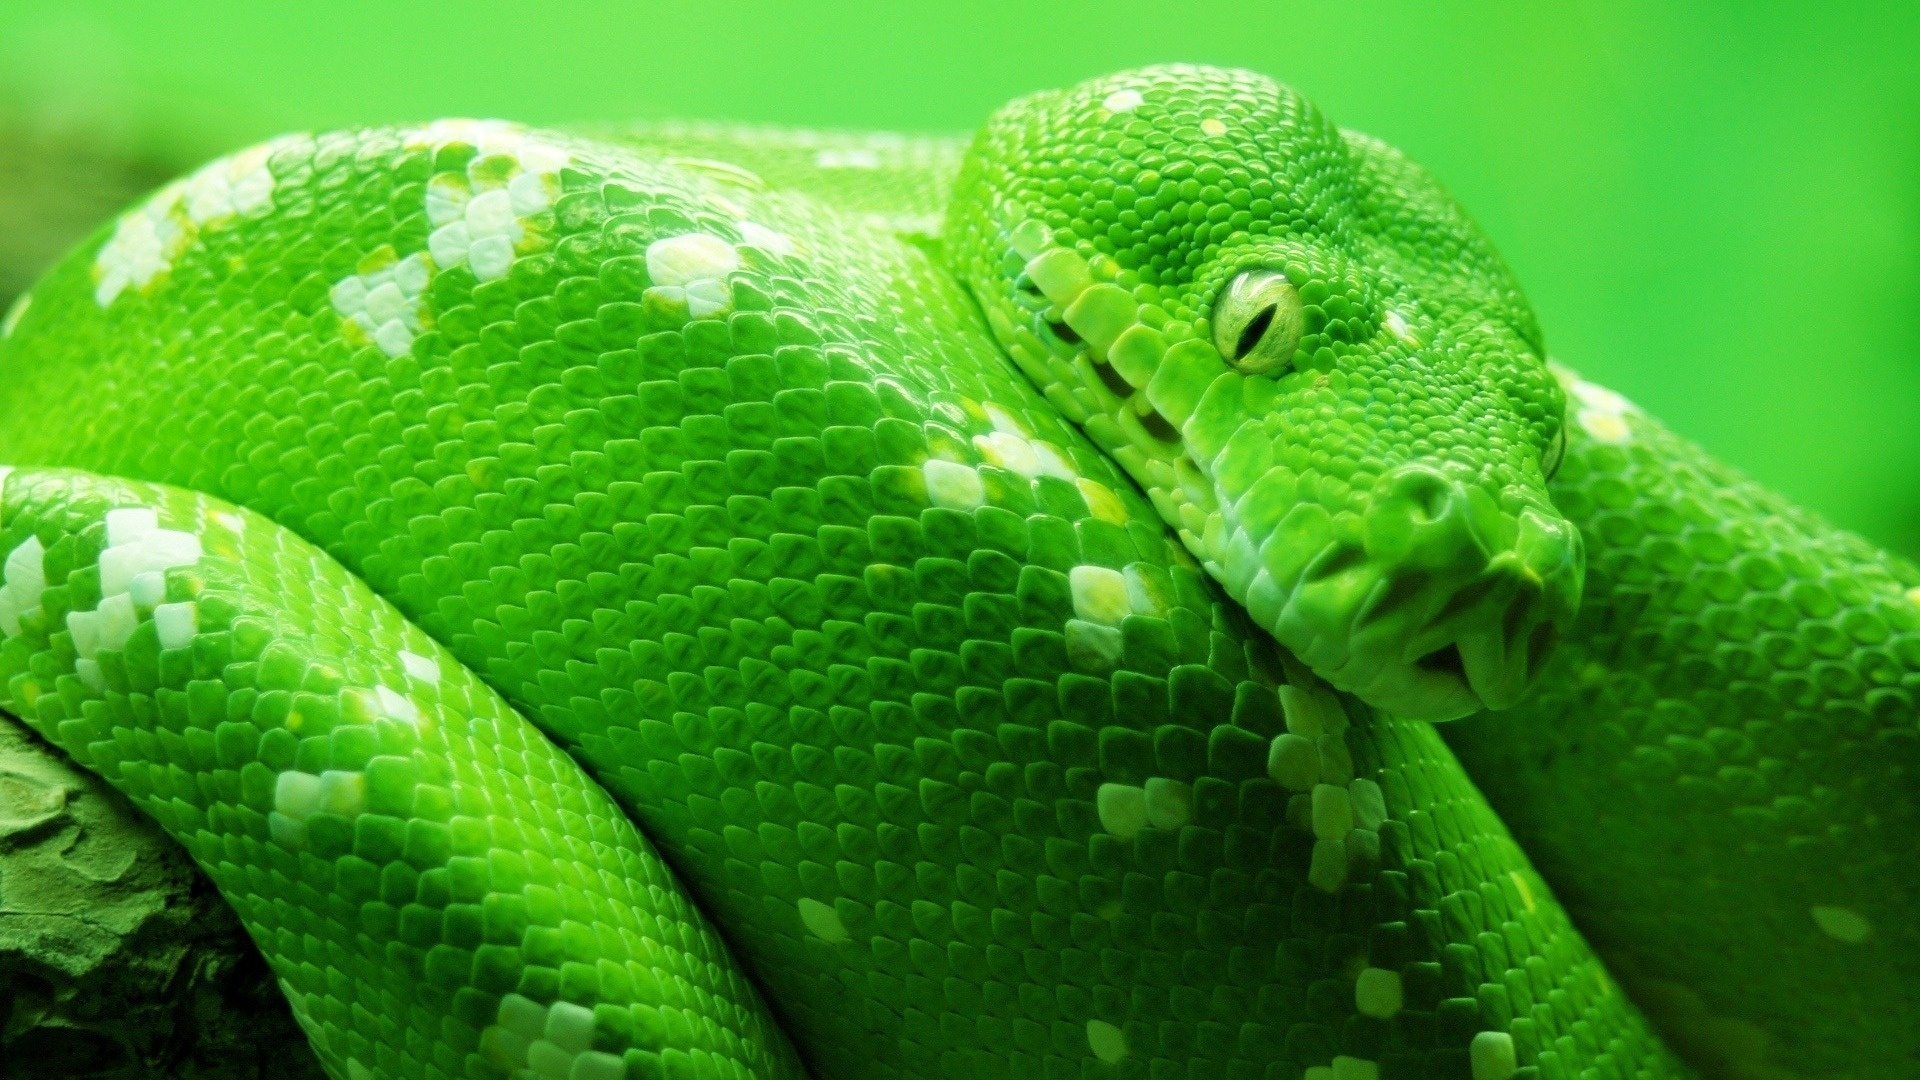 ヘビの壁紙,爬虫類,緑,なめらかなヘビ,蛇,ヘビ